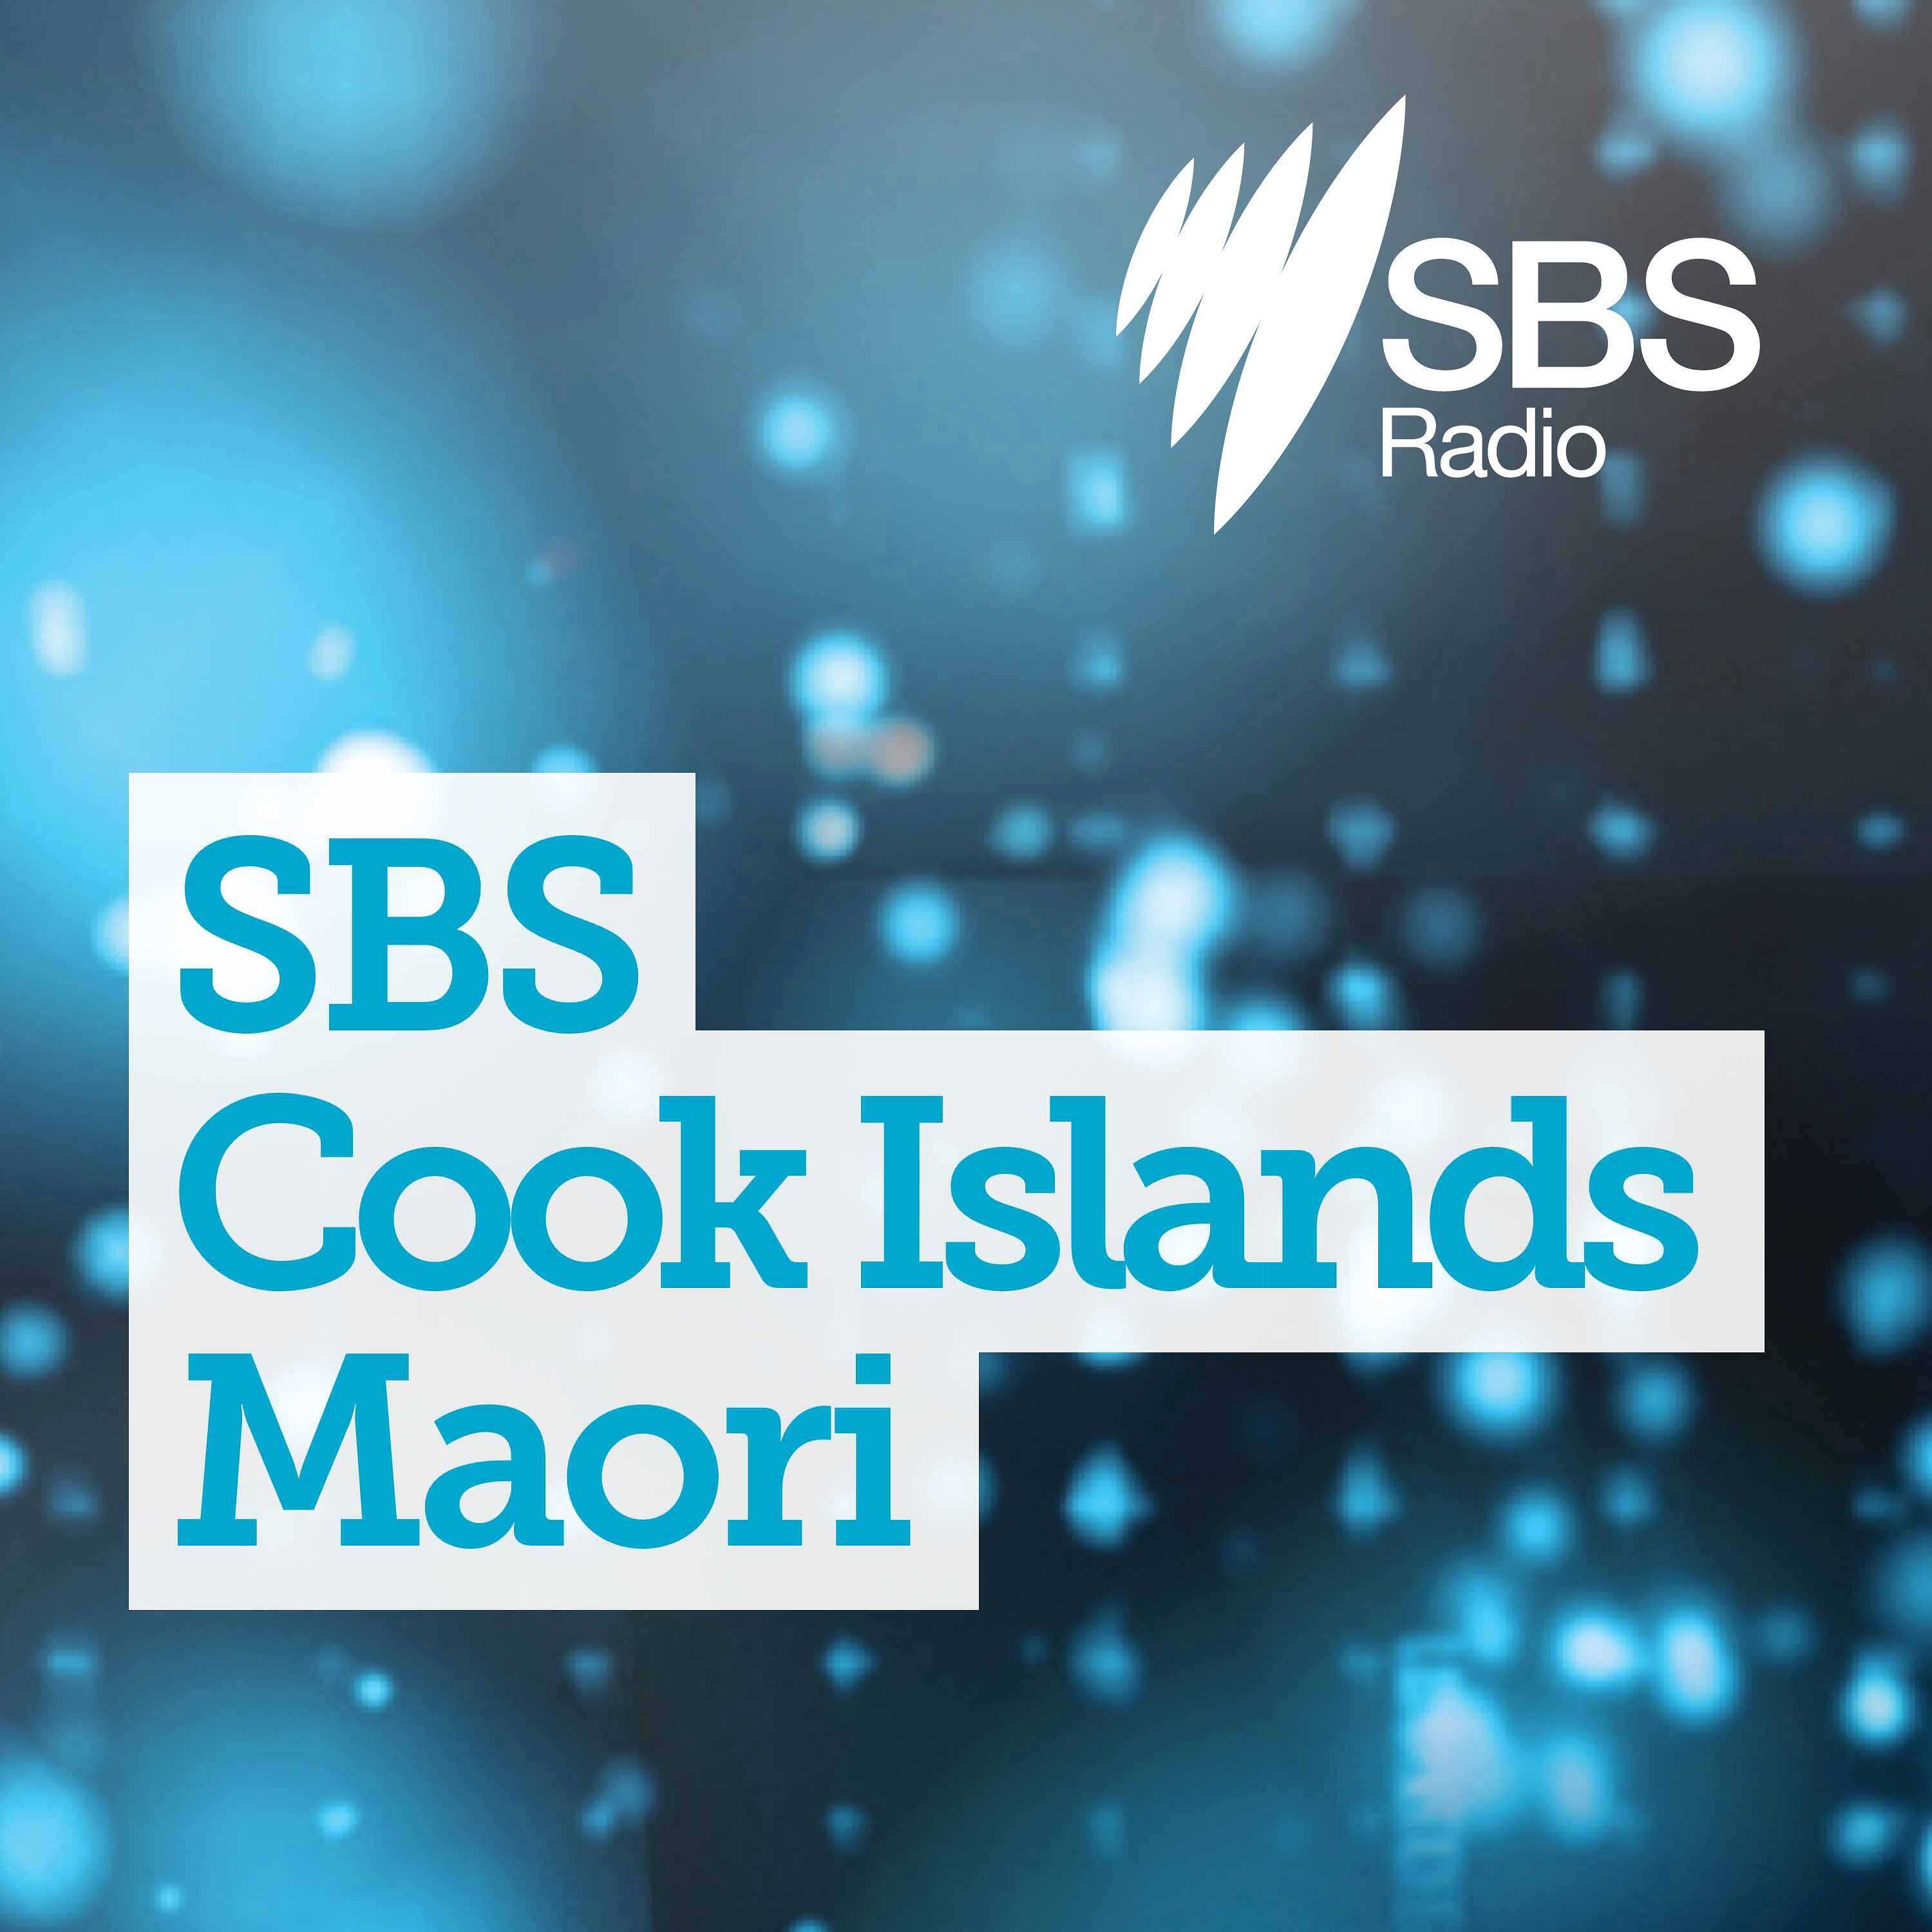 SBS Cook Islands Maori - SBS ki roto i te reo Maori o te Kuki Airani